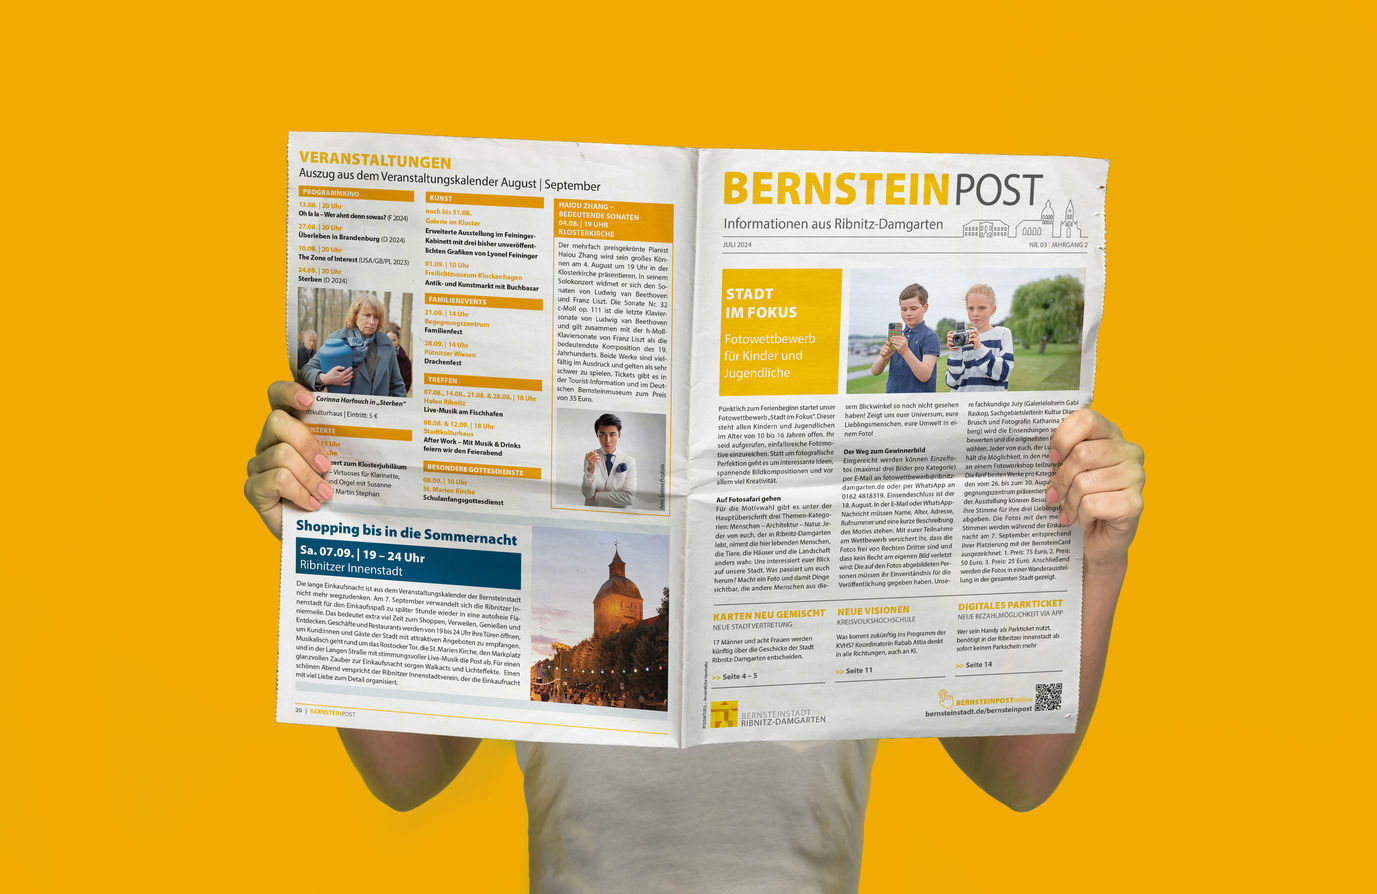 Bernsteinpost-Umfrage